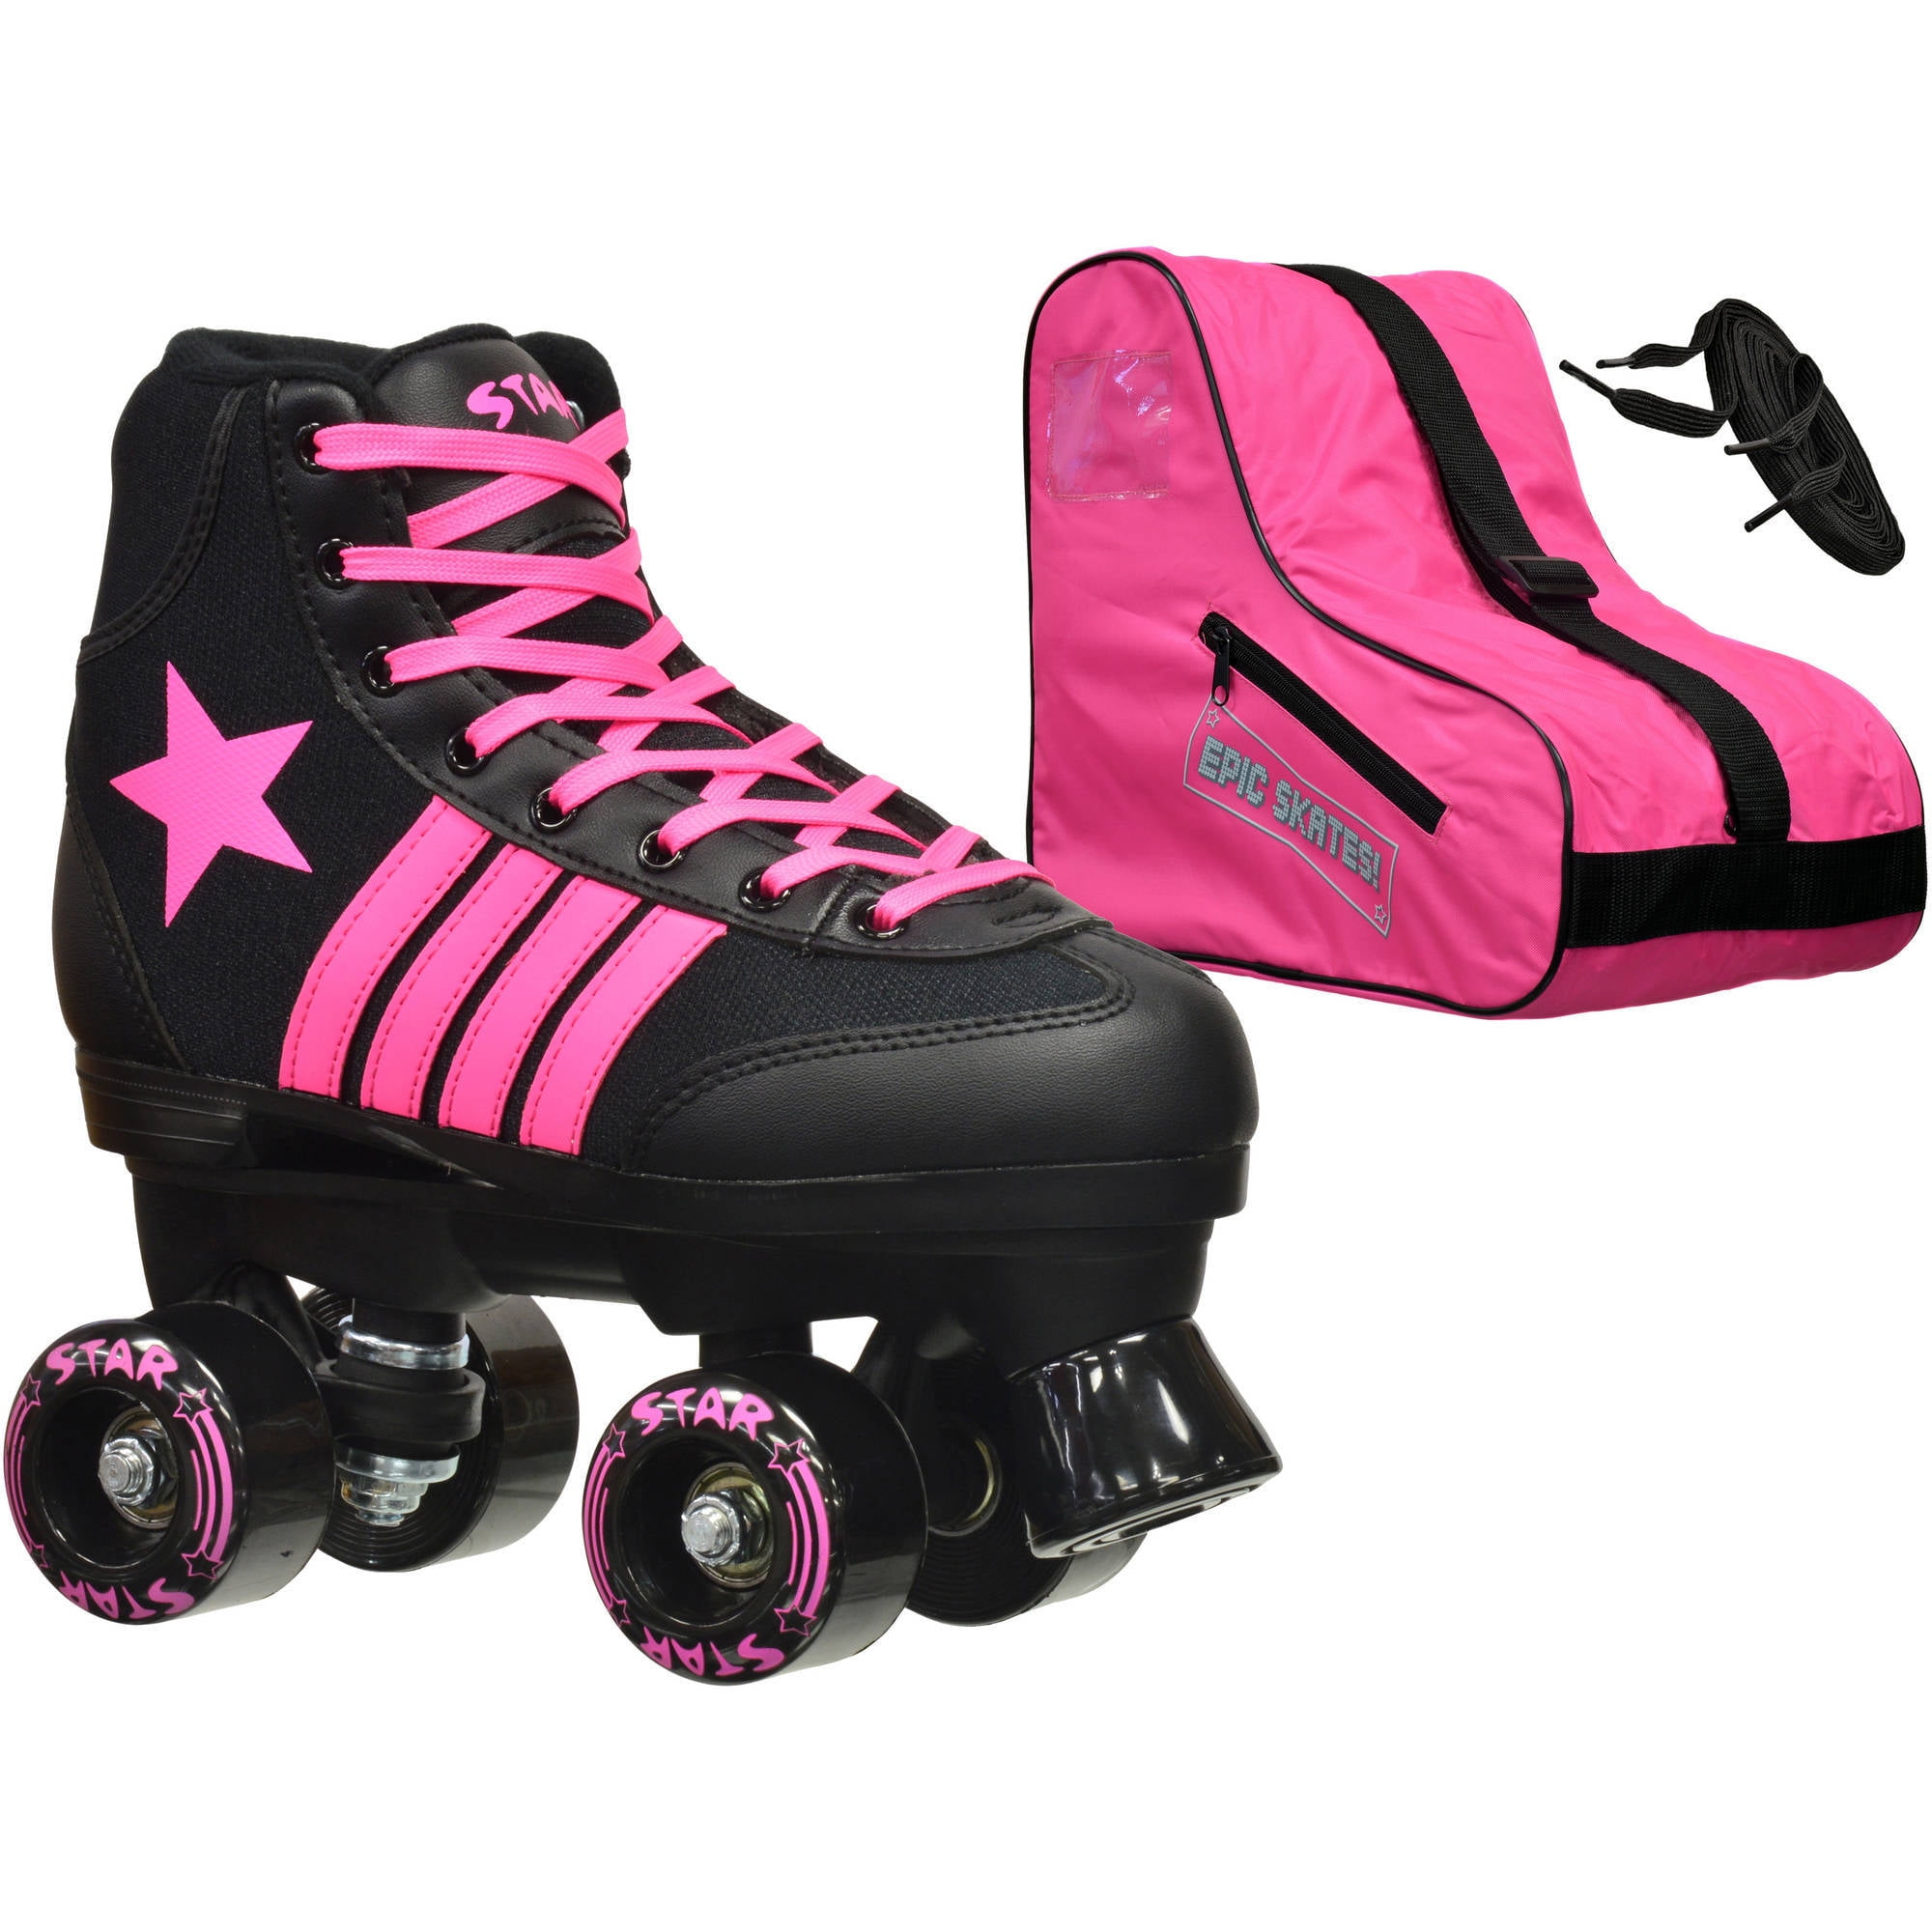 Epic Skates Epic Star Carina Pink High-Top Quad Roller Skates Package 